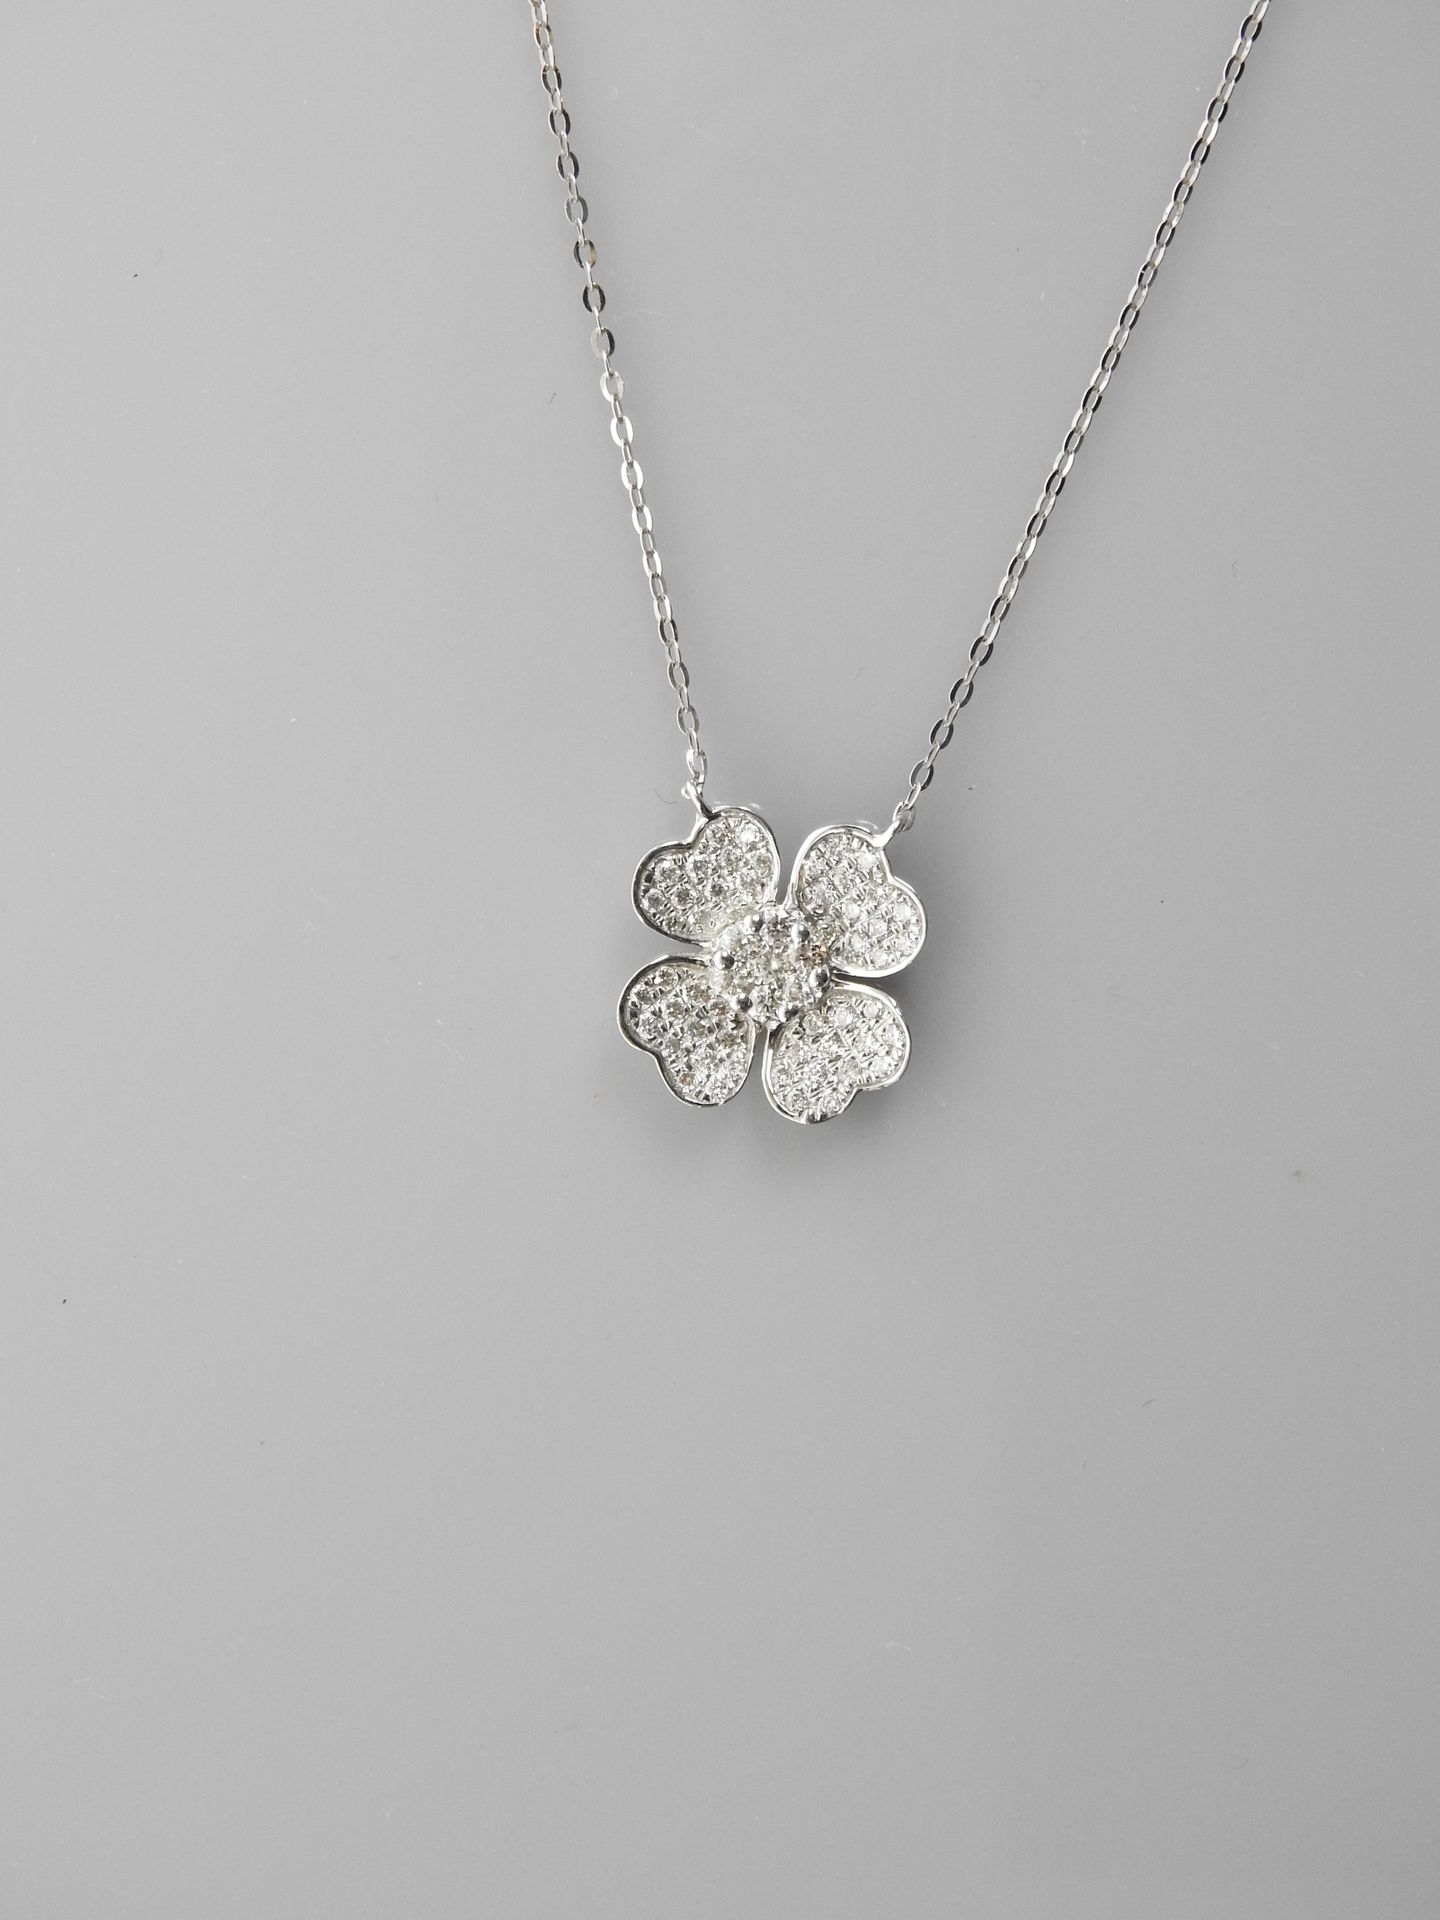 Null 白金项链和吊坠，750毫米，绘制一朵盛开的钻石花，总重约0.40克拉，弹簧环扣，长42厘米，重量：2.05克，毛重。